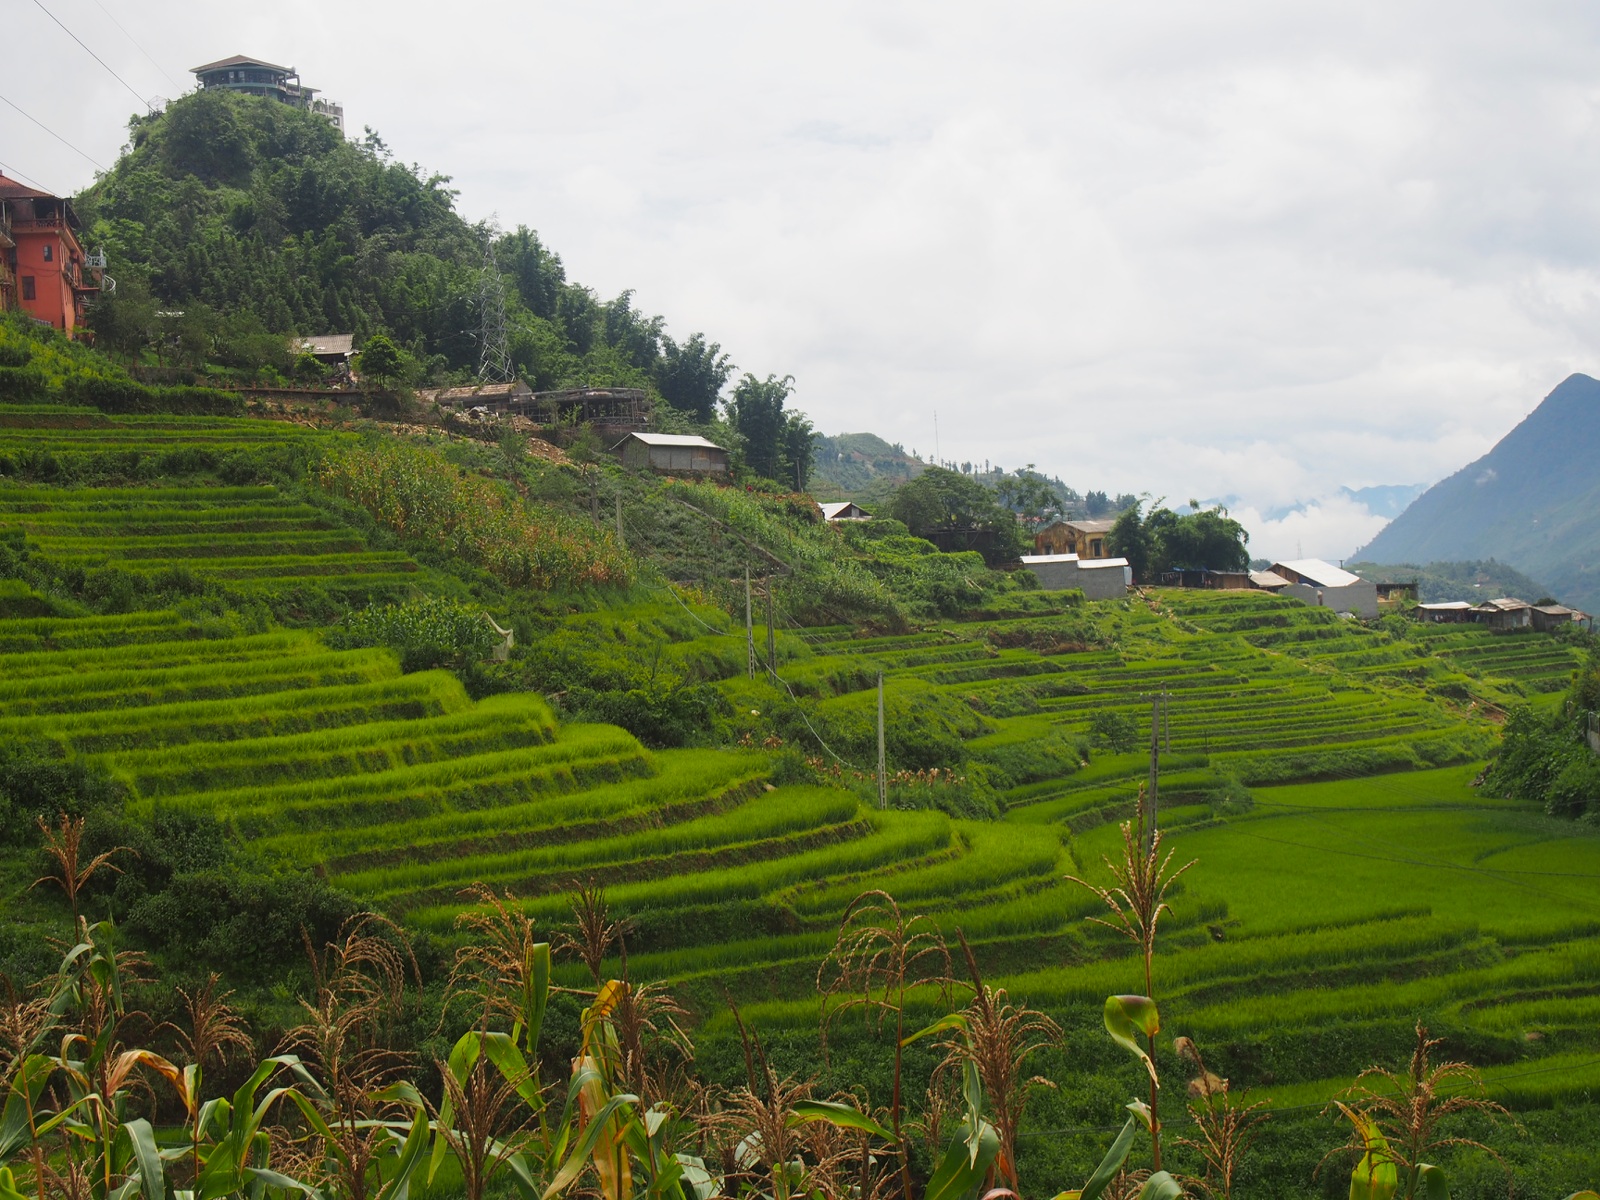 Rice terraces of Sapa